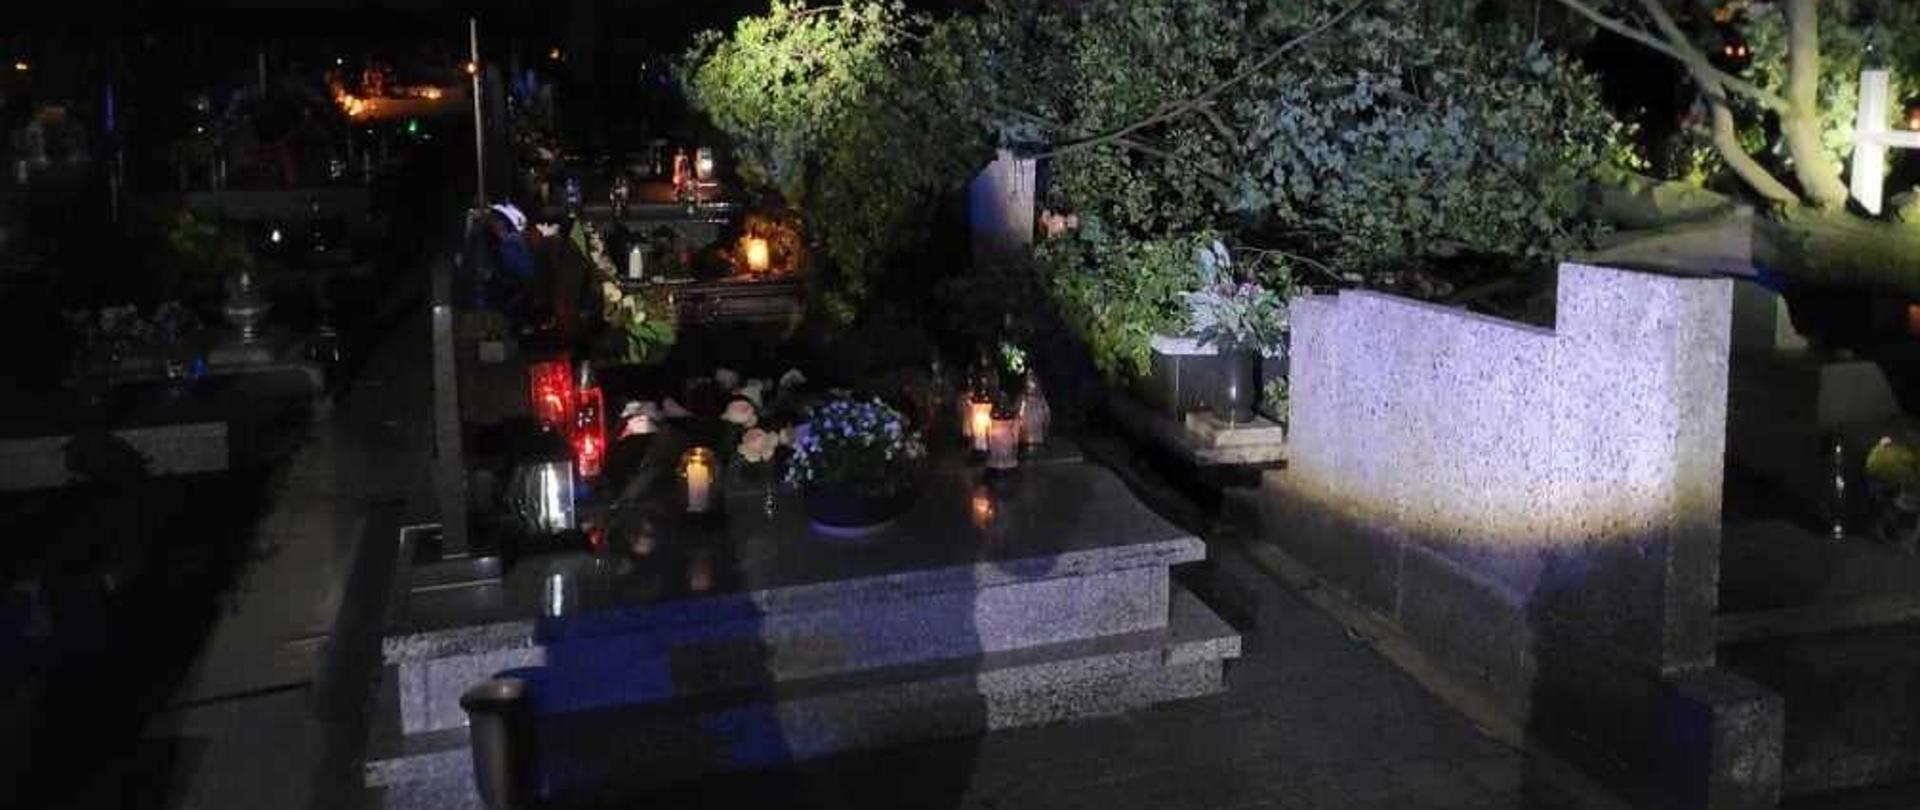 Zdjęcie przedstawia fragment cmentarza w Zielonej Wsi w porze nocnej. Widoczne są nagrobki, na których znajdują się kwiaty oraz zapalone znicze. Z prawej strony widać dużą koronę drzewa i fragment pnia, które leżą na pomnikach. 